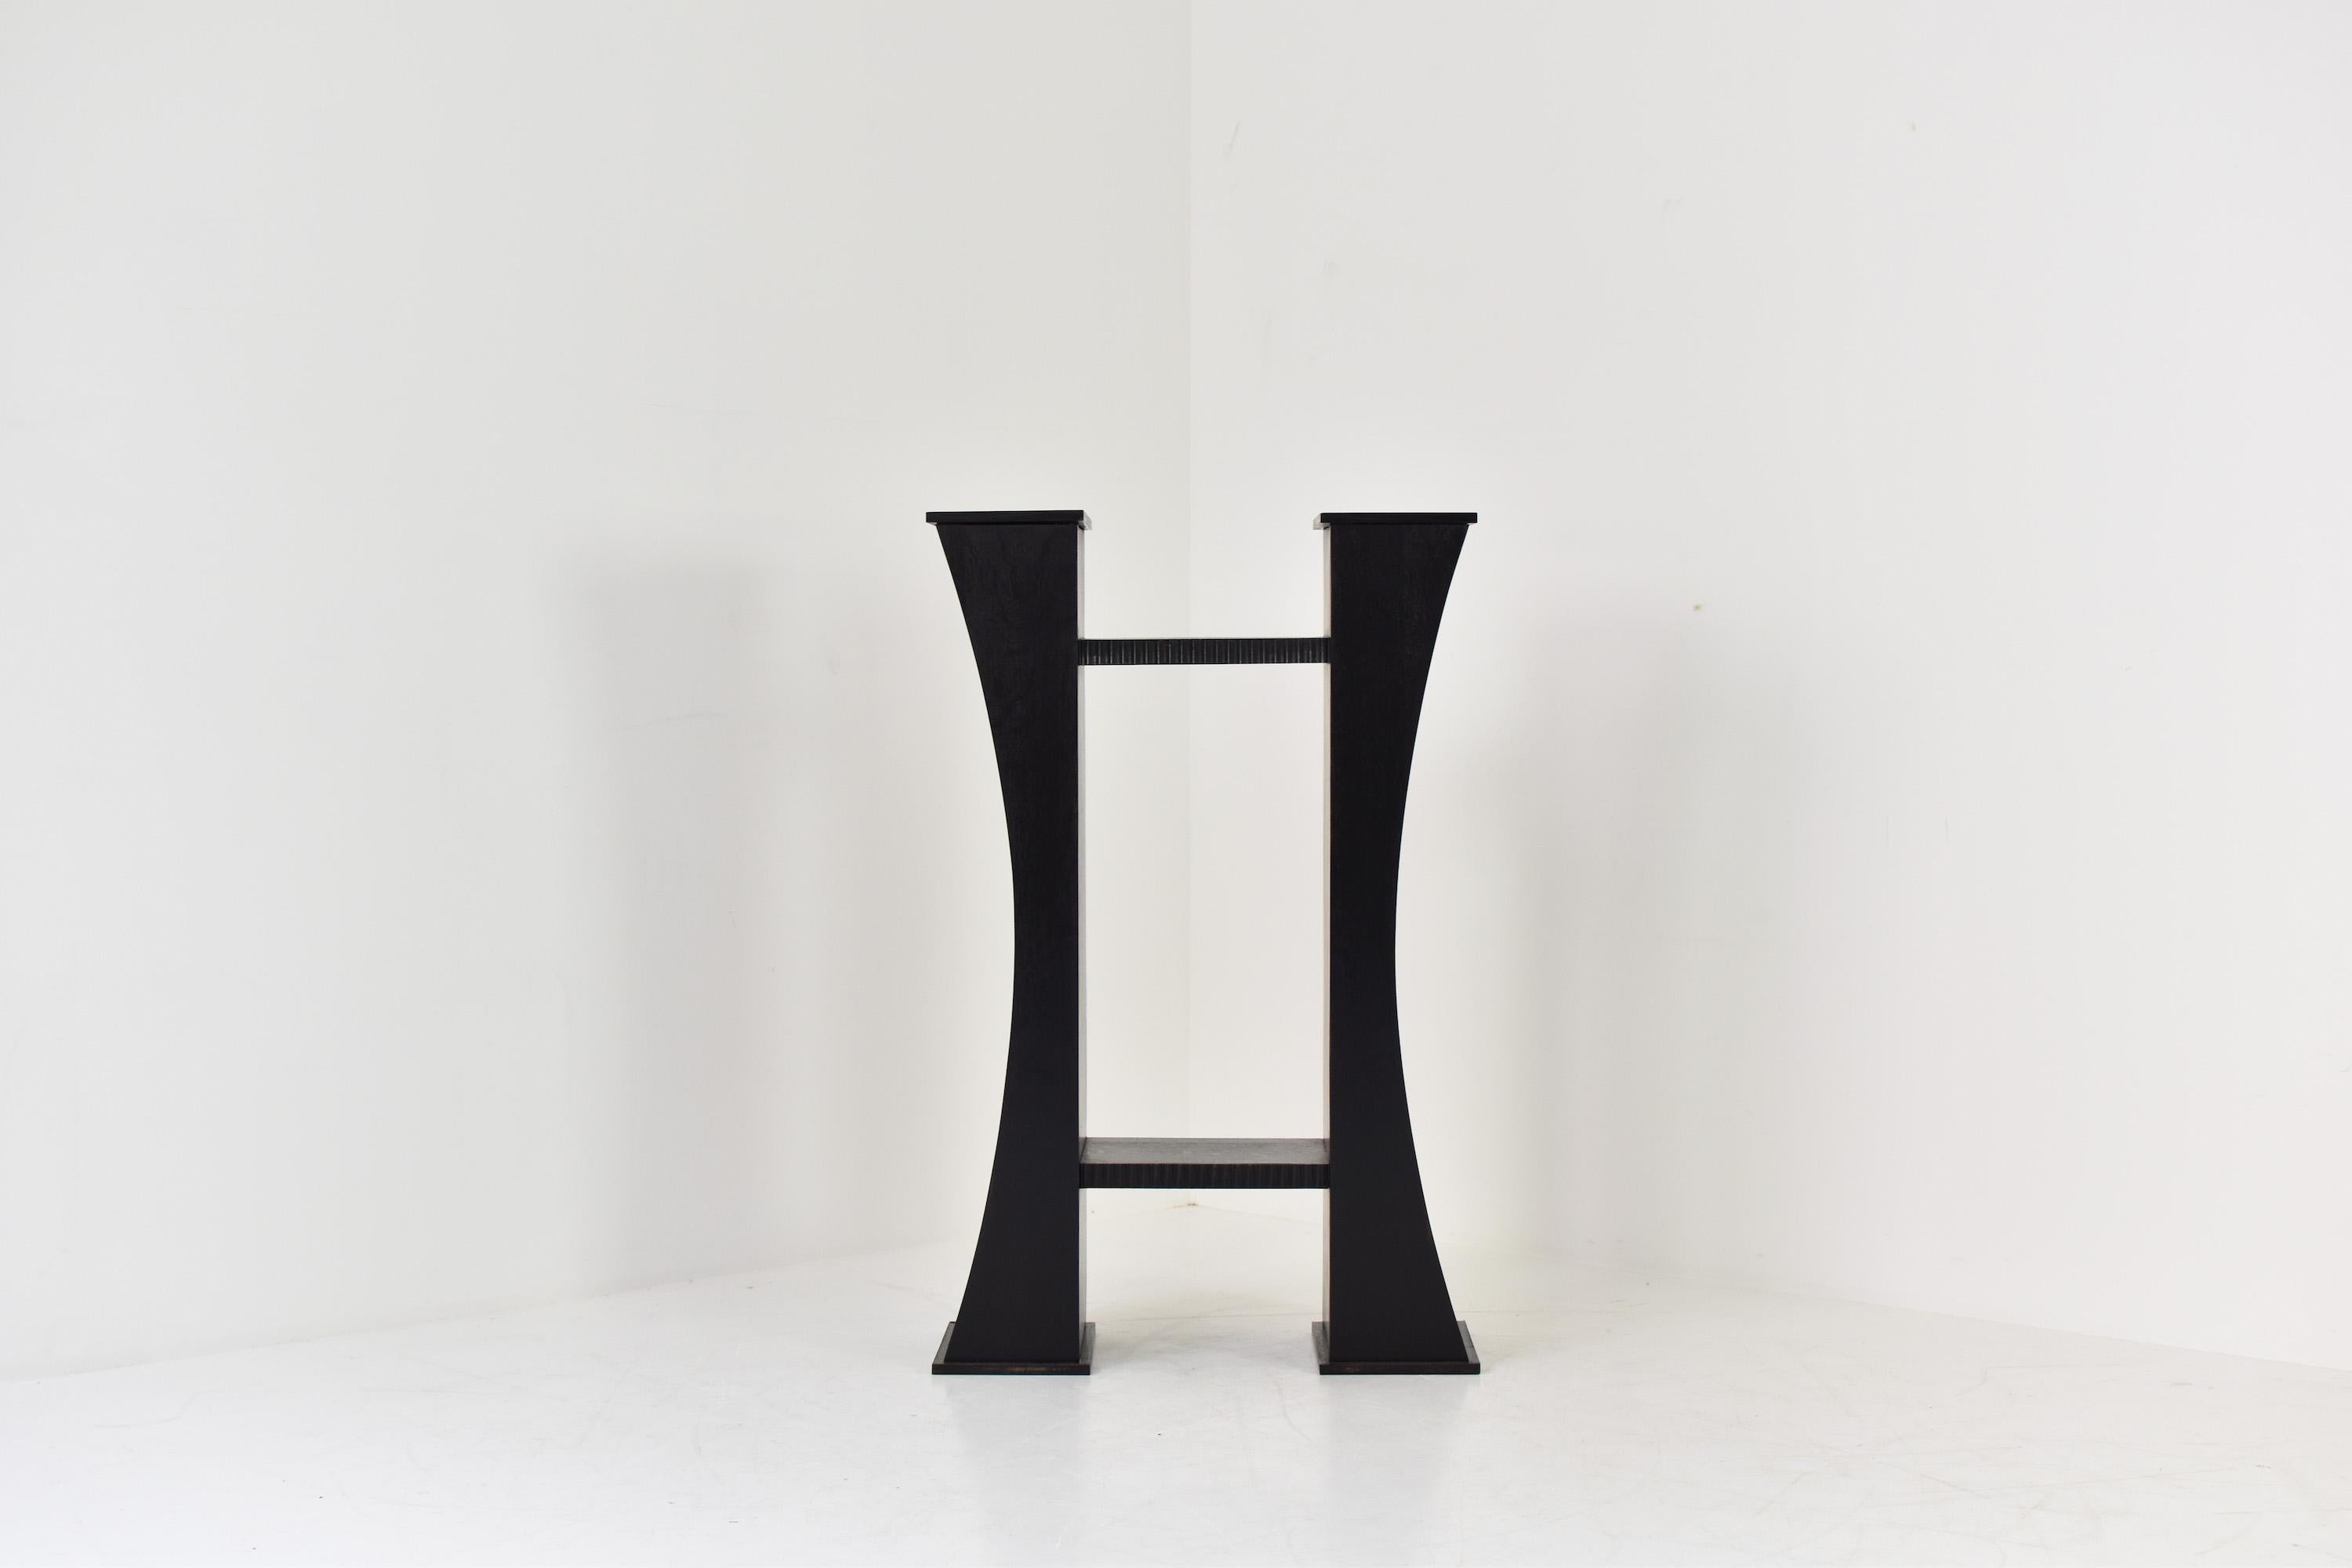 Console Art déco française, années 1930. Cette unité est fabriquée en bois laqué noir et est entièrement symétrique. Peut être exposée au milieu d'une pièce comme table centrale. Restauré avec amour.